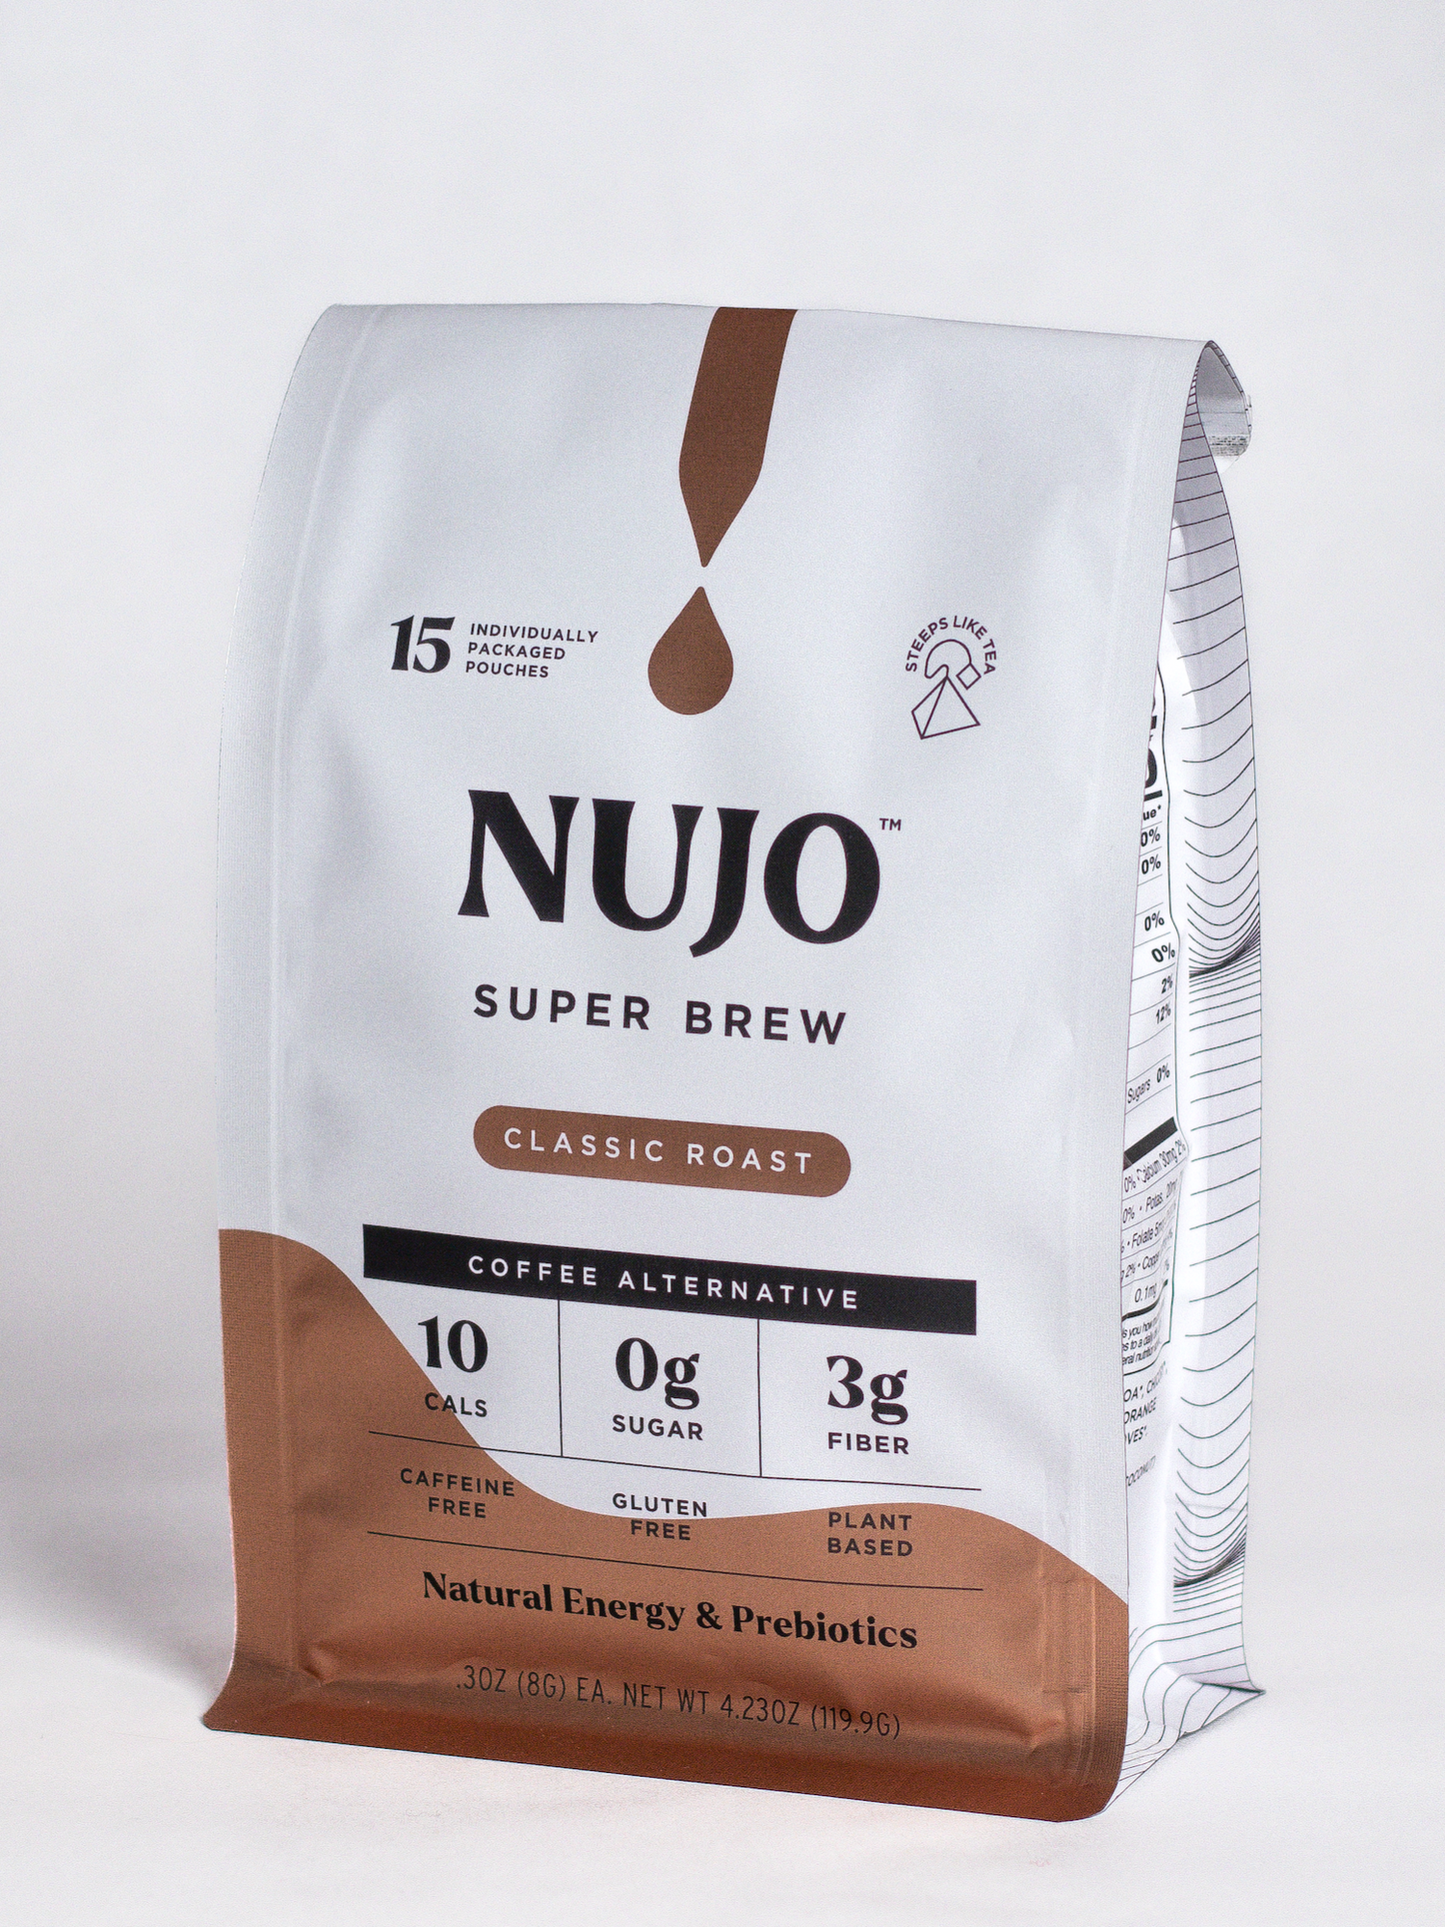 NUJO Super Brew single serve brew bags